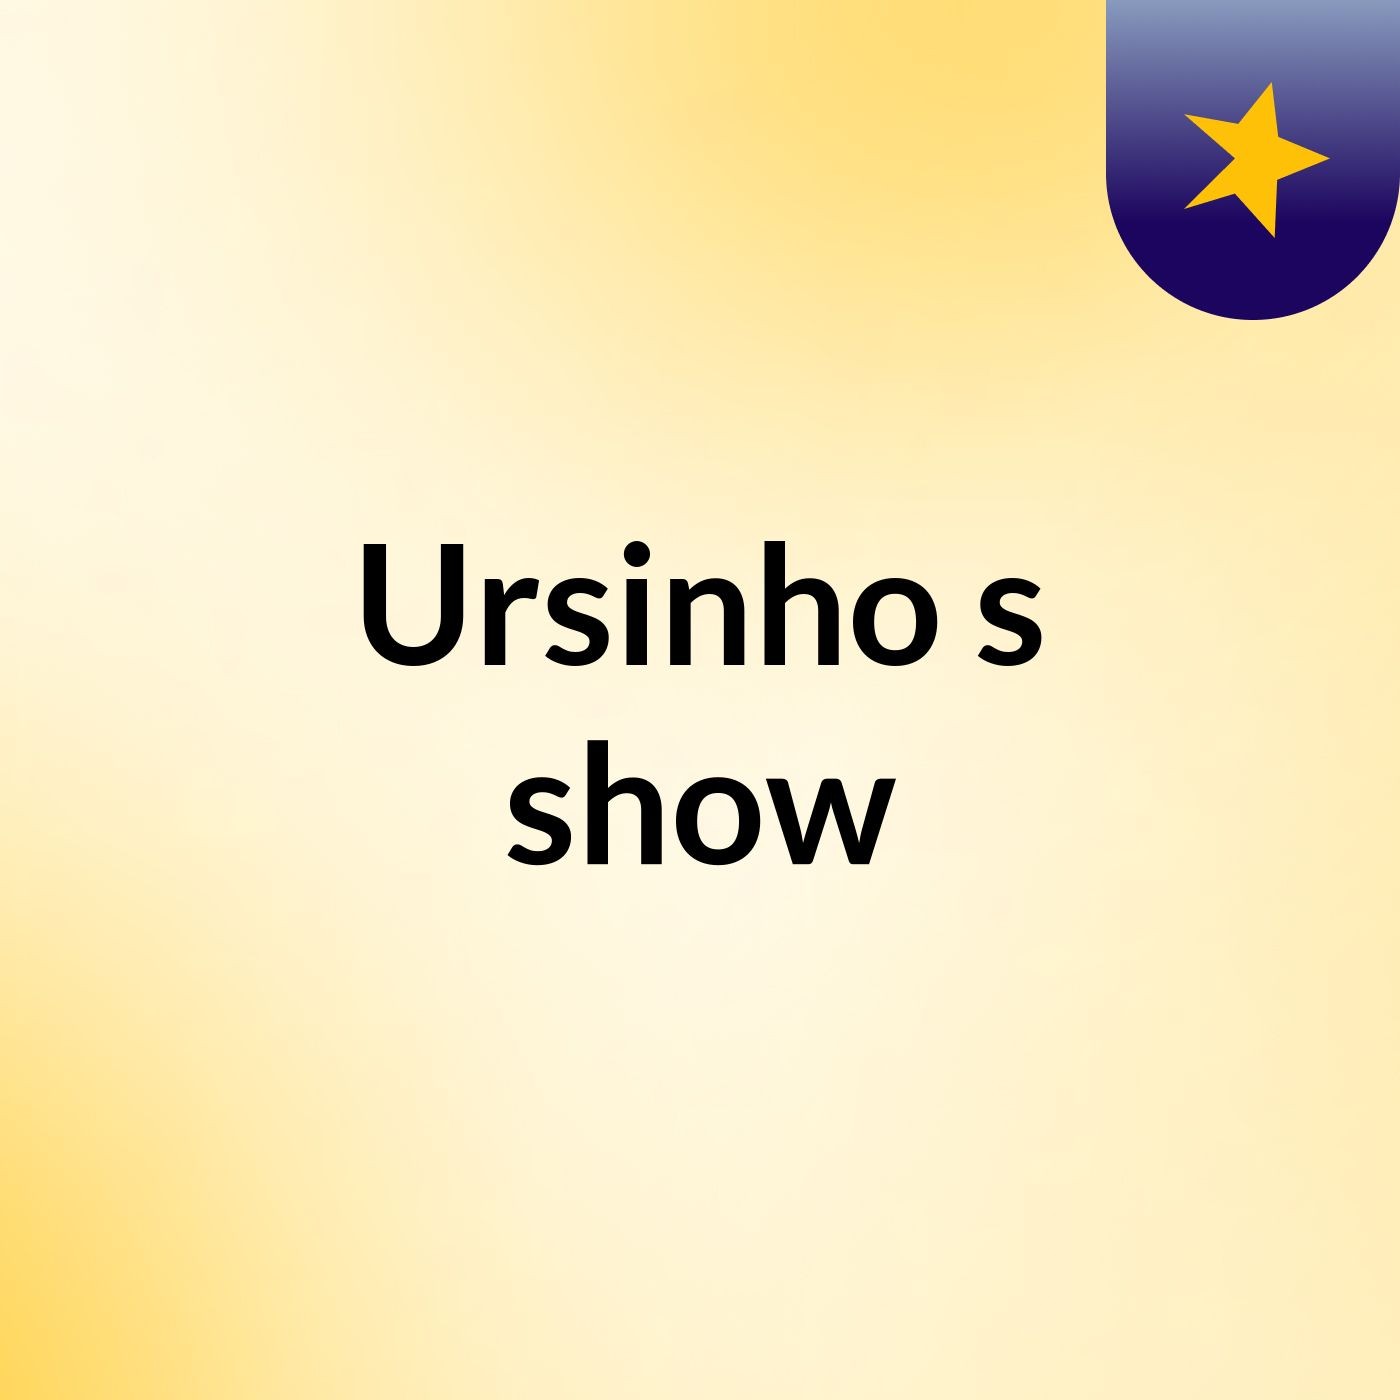 Ursinho's show